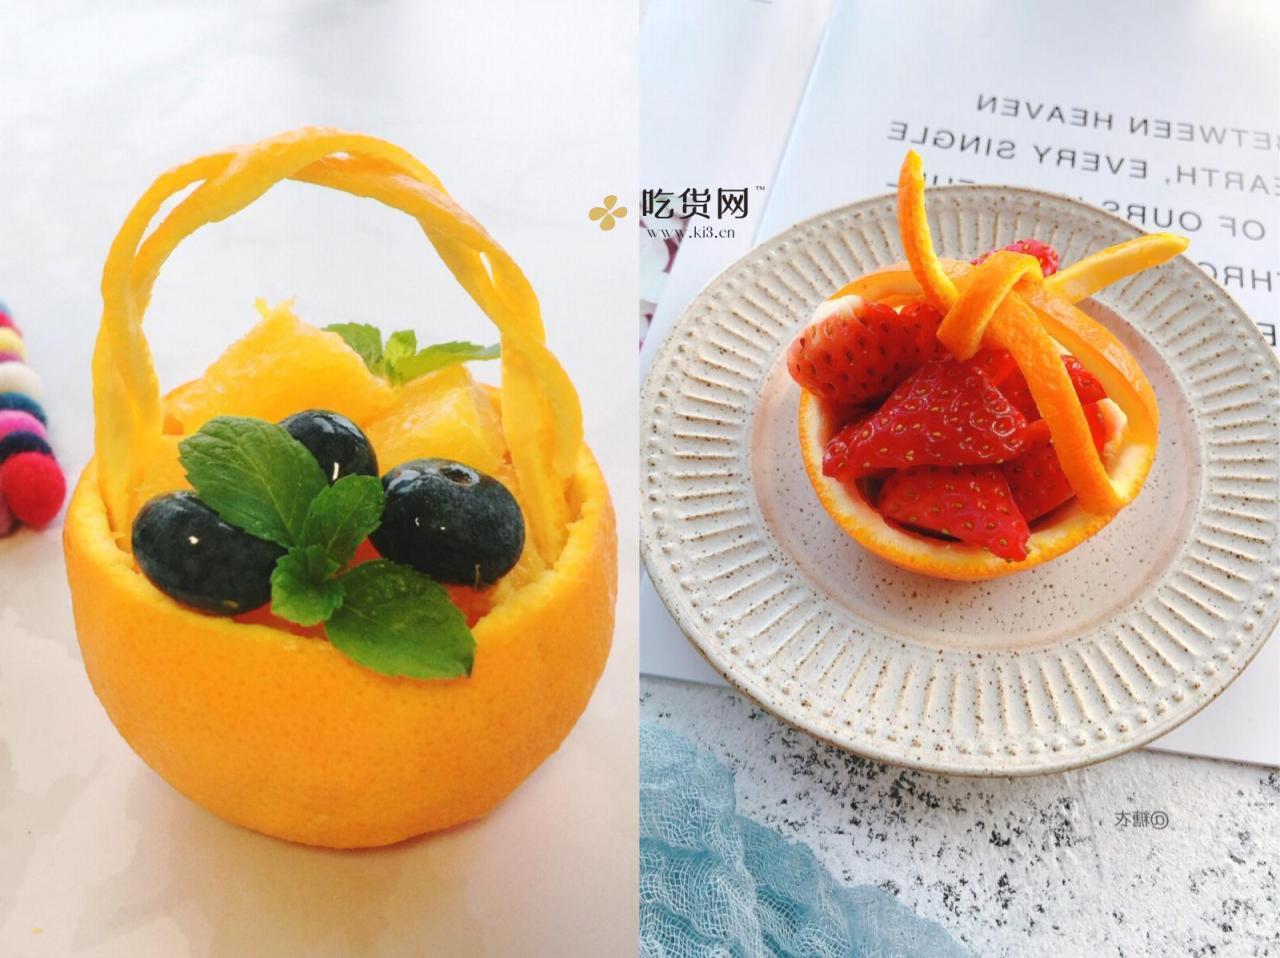 橙子的水果拼盘切法-图库-五毛网